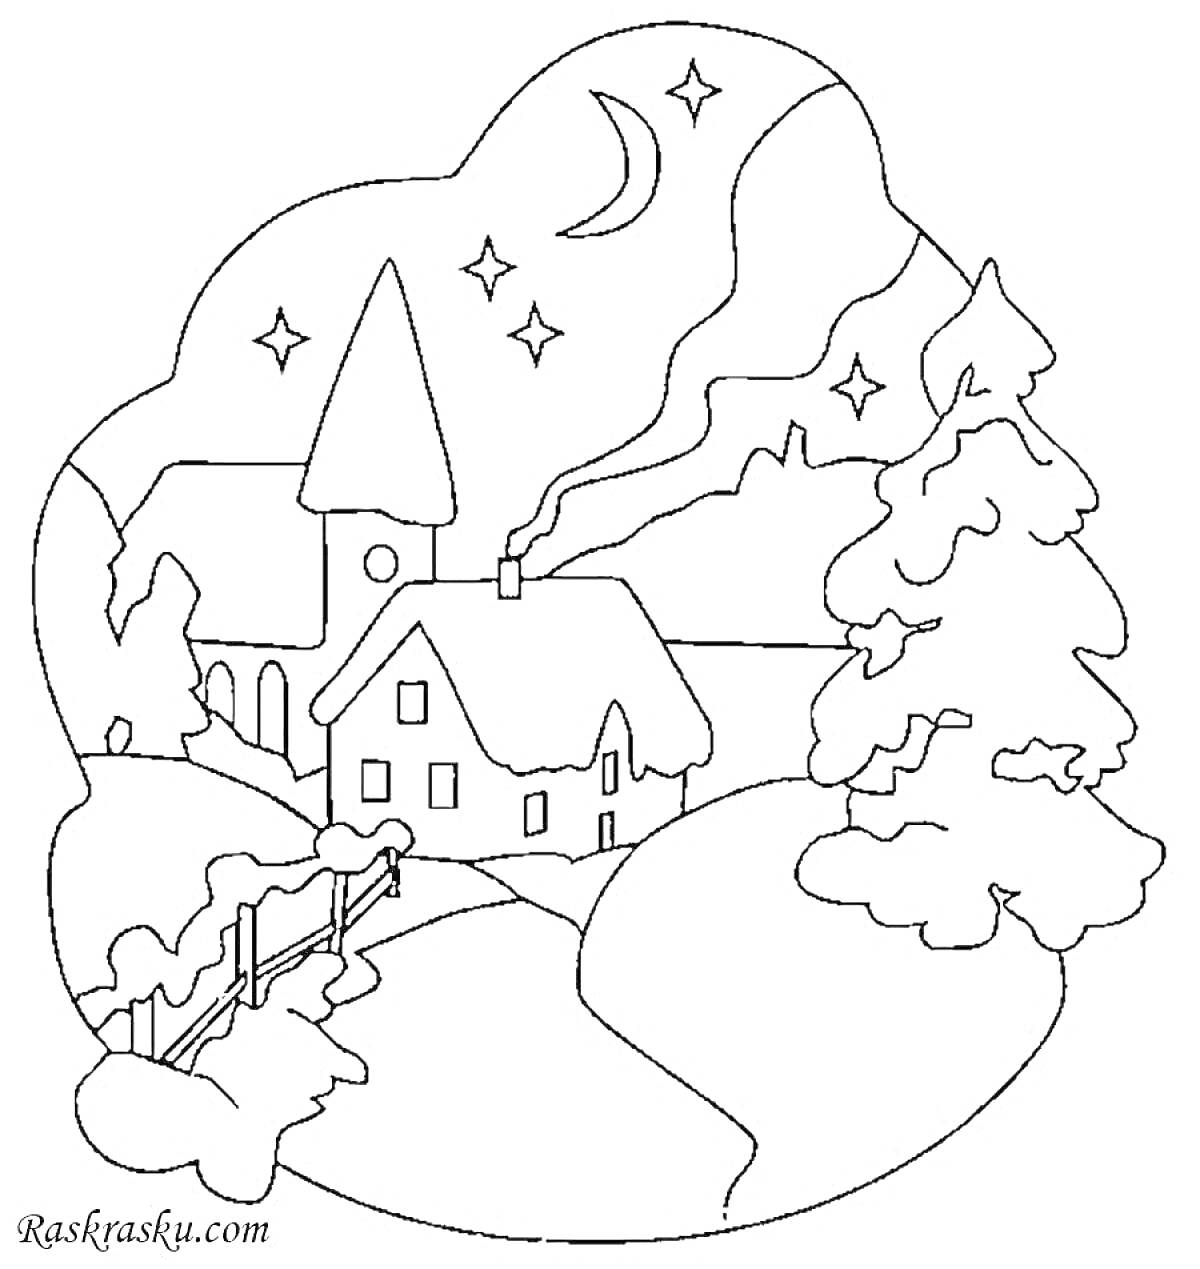 Раскраска Деревня зимой с домами, церковью, елью, забором, дорогой, звездами и месяцем на ночном небе